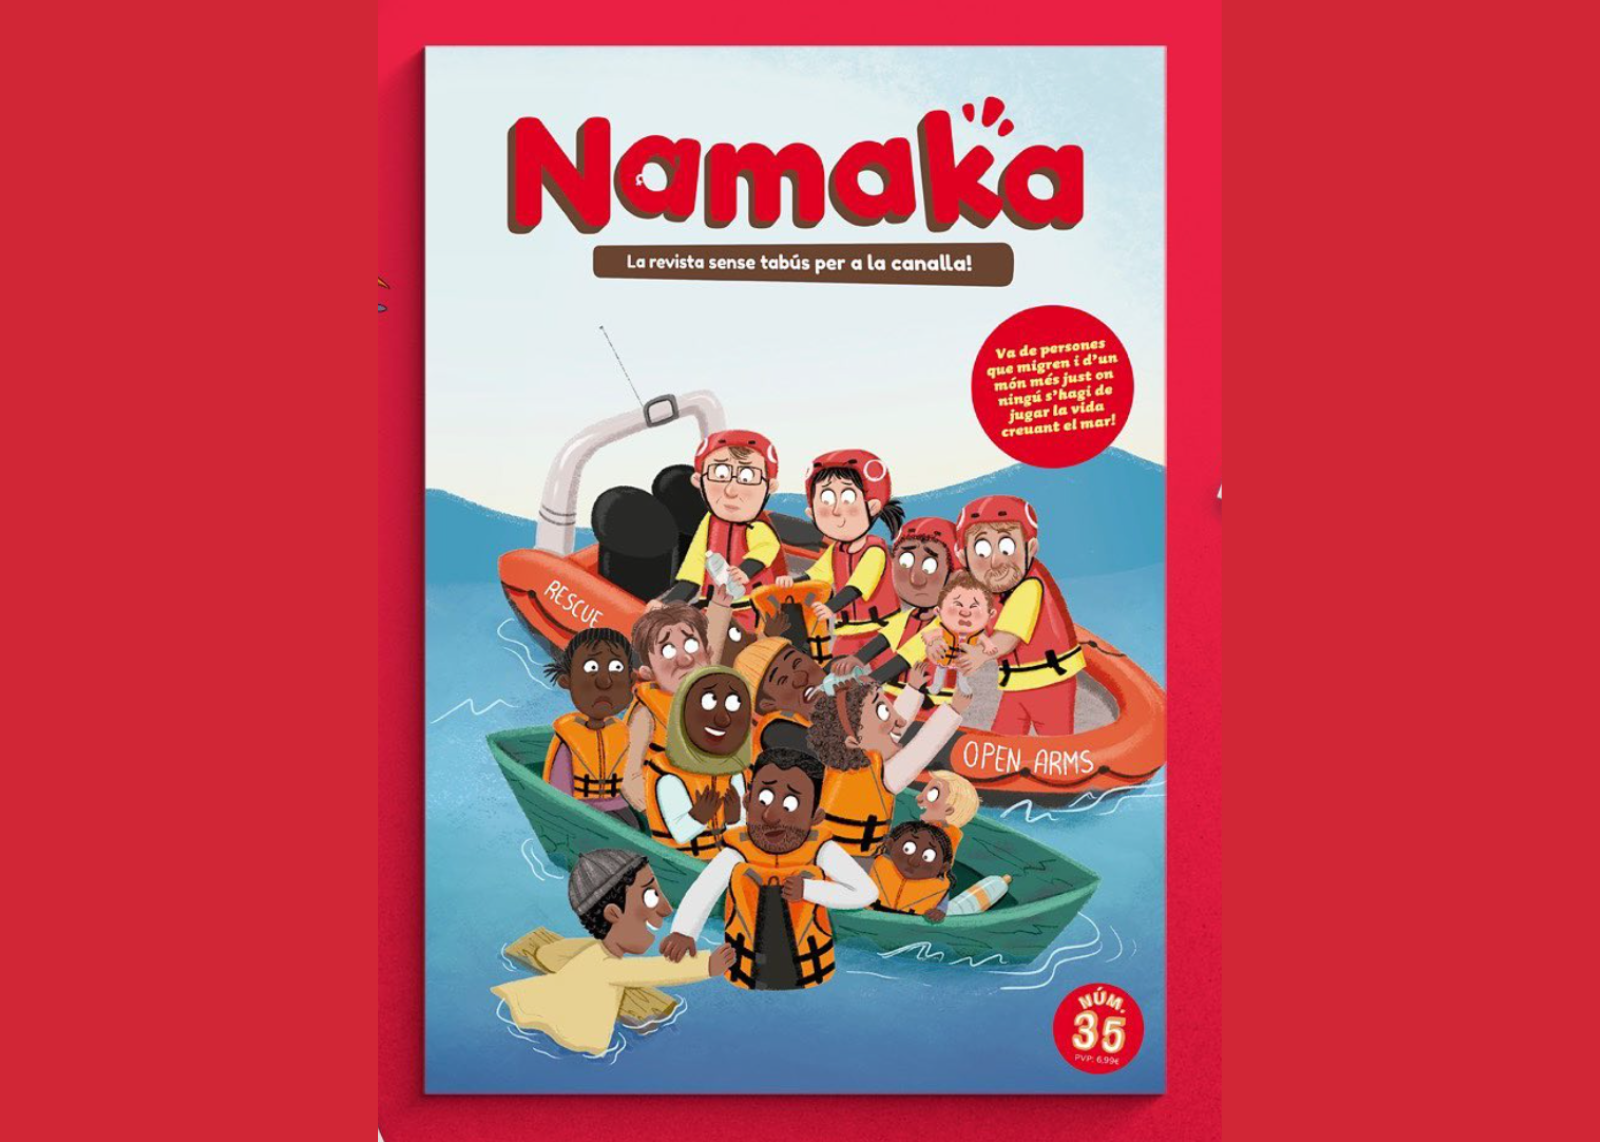  'Namaka' dedica un número especial a la migració, els DDHH i l'empatia